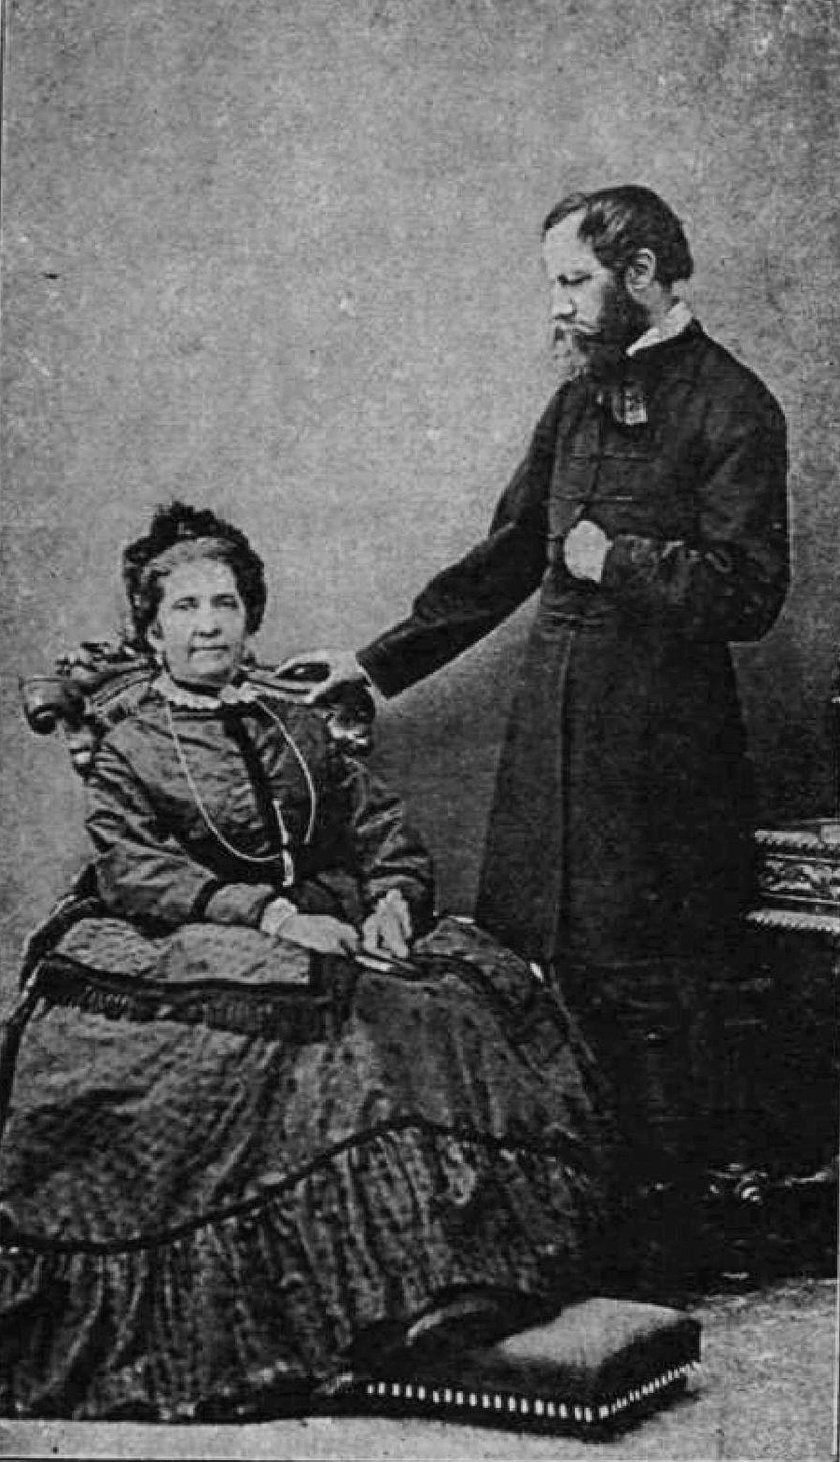 Laborfalvi Róza és Jókai Mór, 1873-as felvétel.